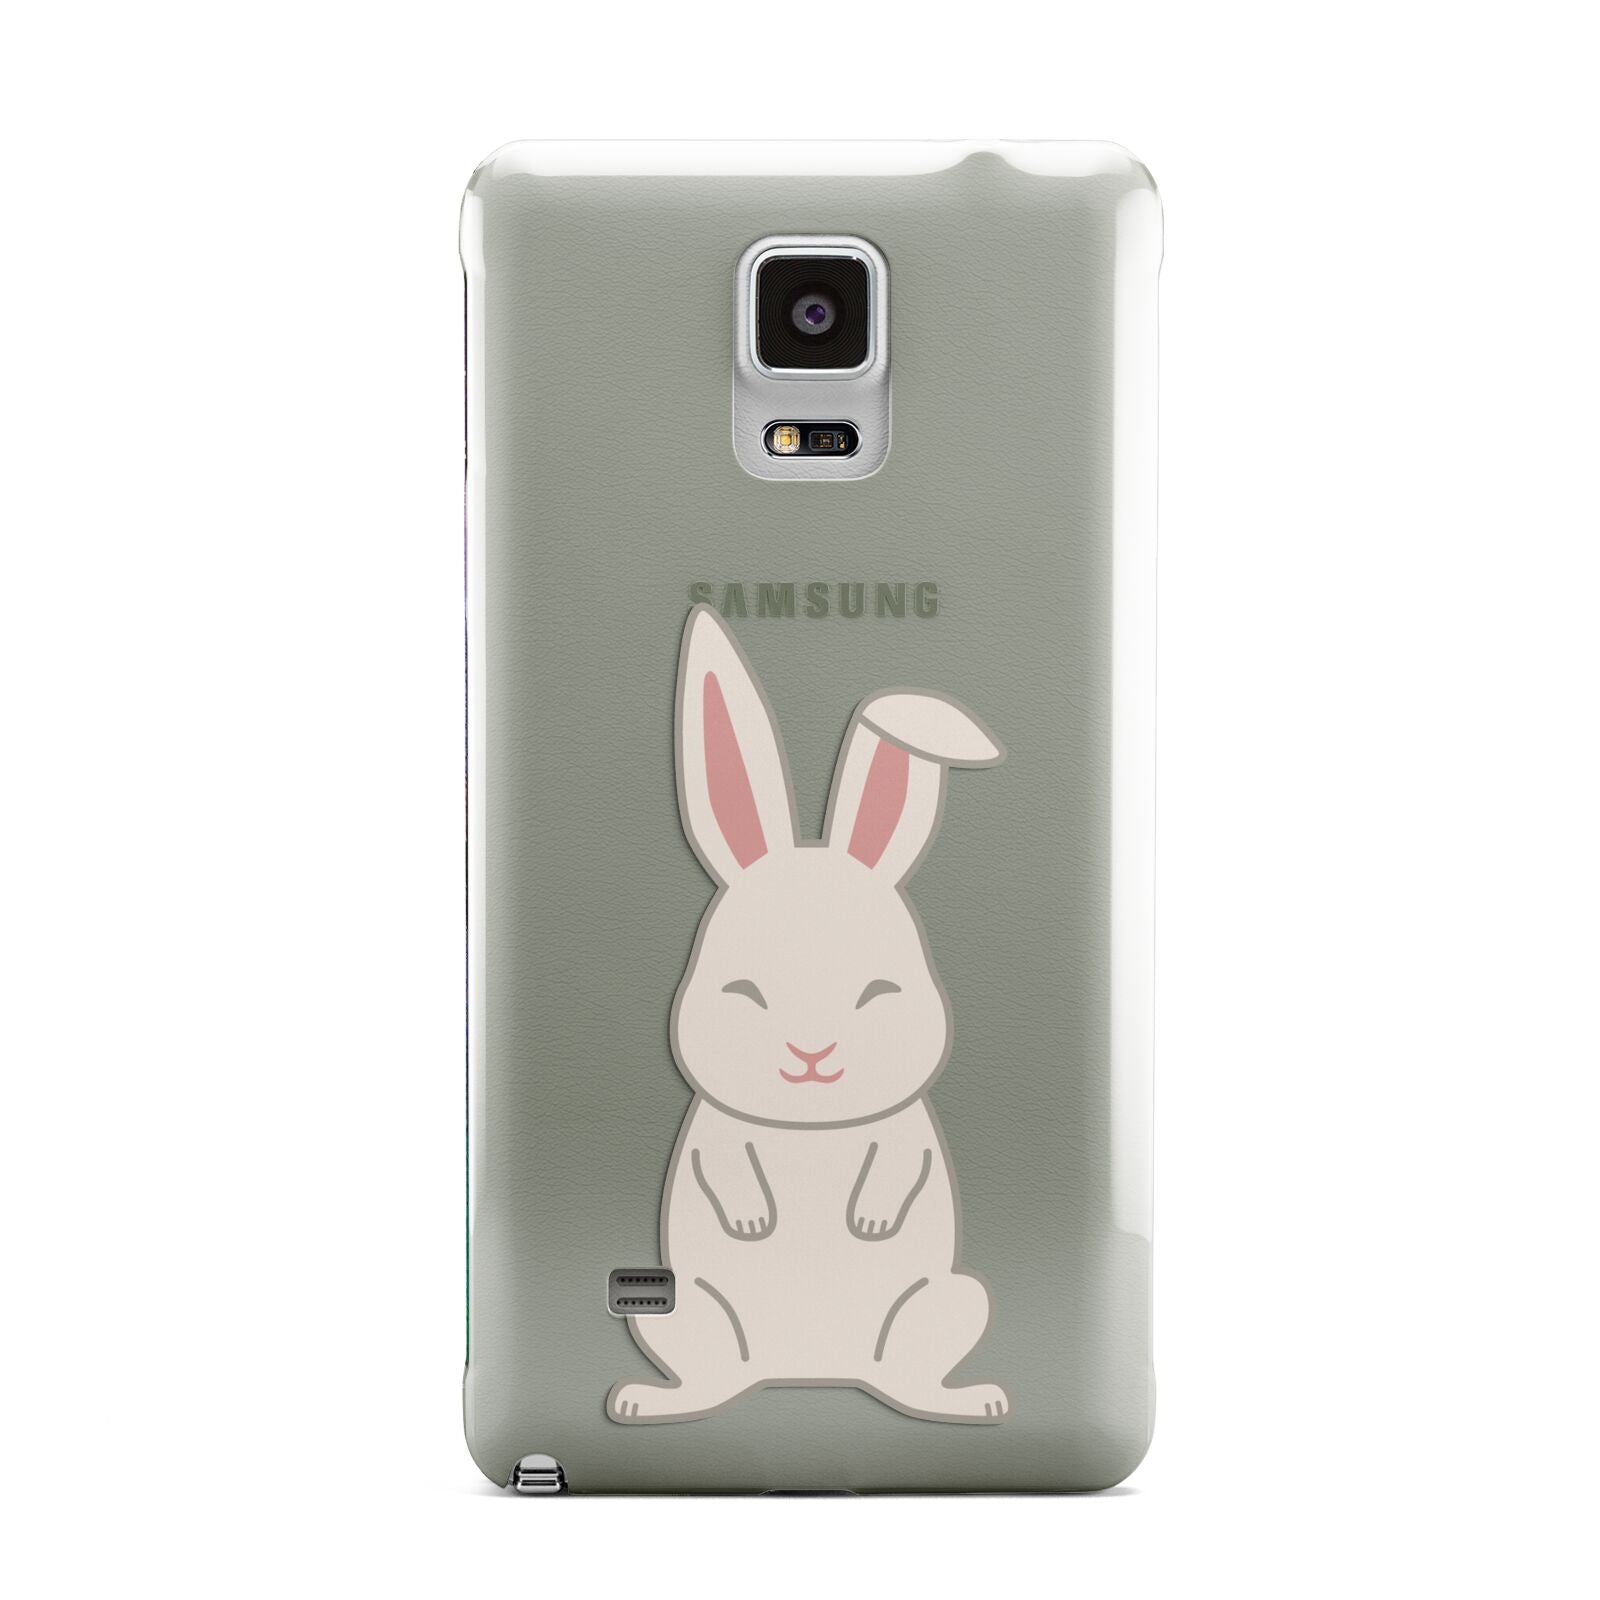 Bunny Samsung Galaxy Note 4 Case